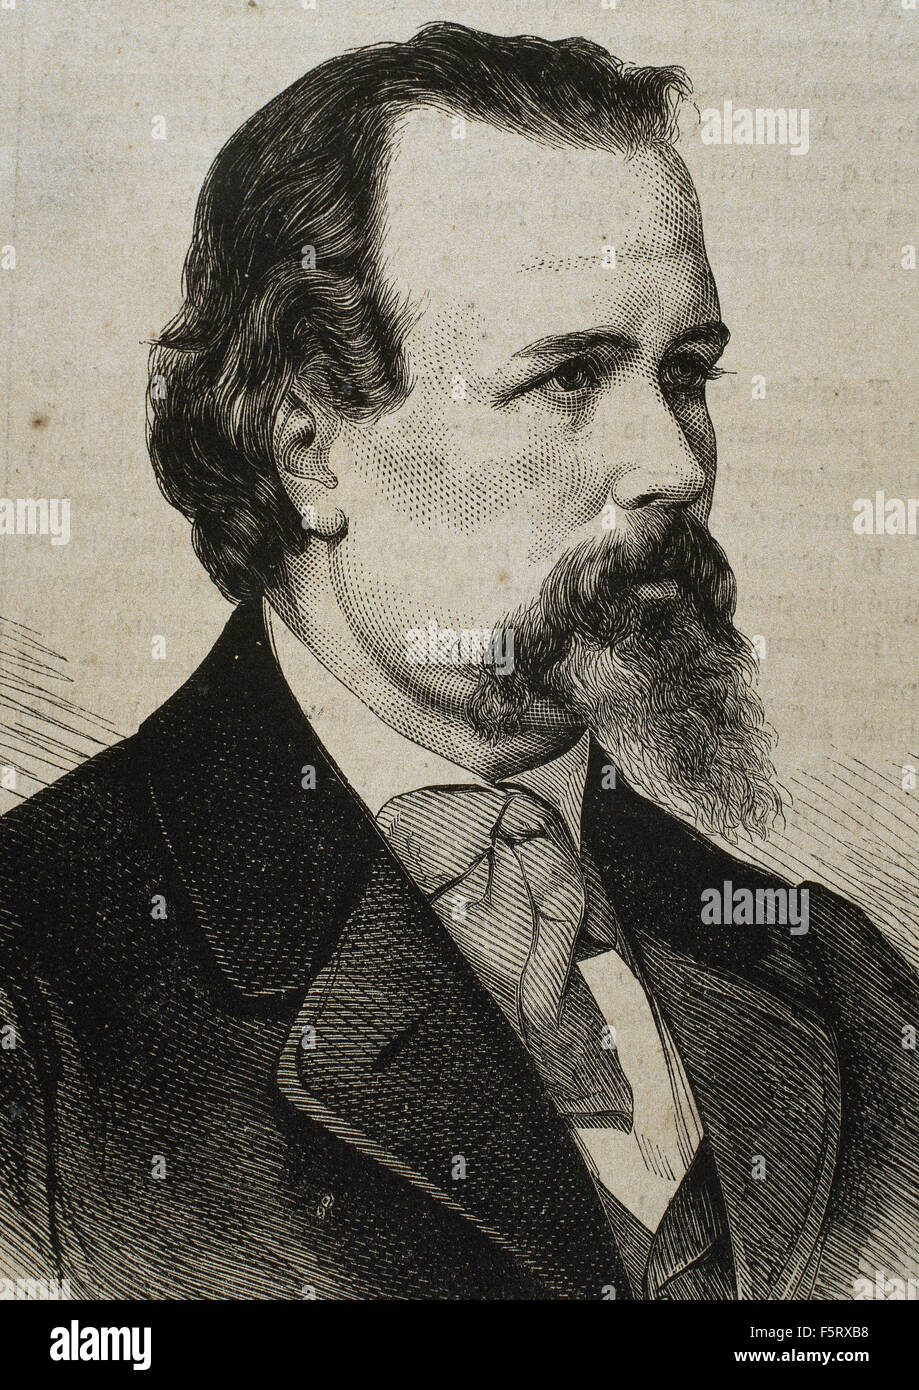 Vicente Palmaroli Gonzalez (1834-1896). Spanischer Maler. Porträt. Gravur. des 19. Jahrhunderts. Stockfoto